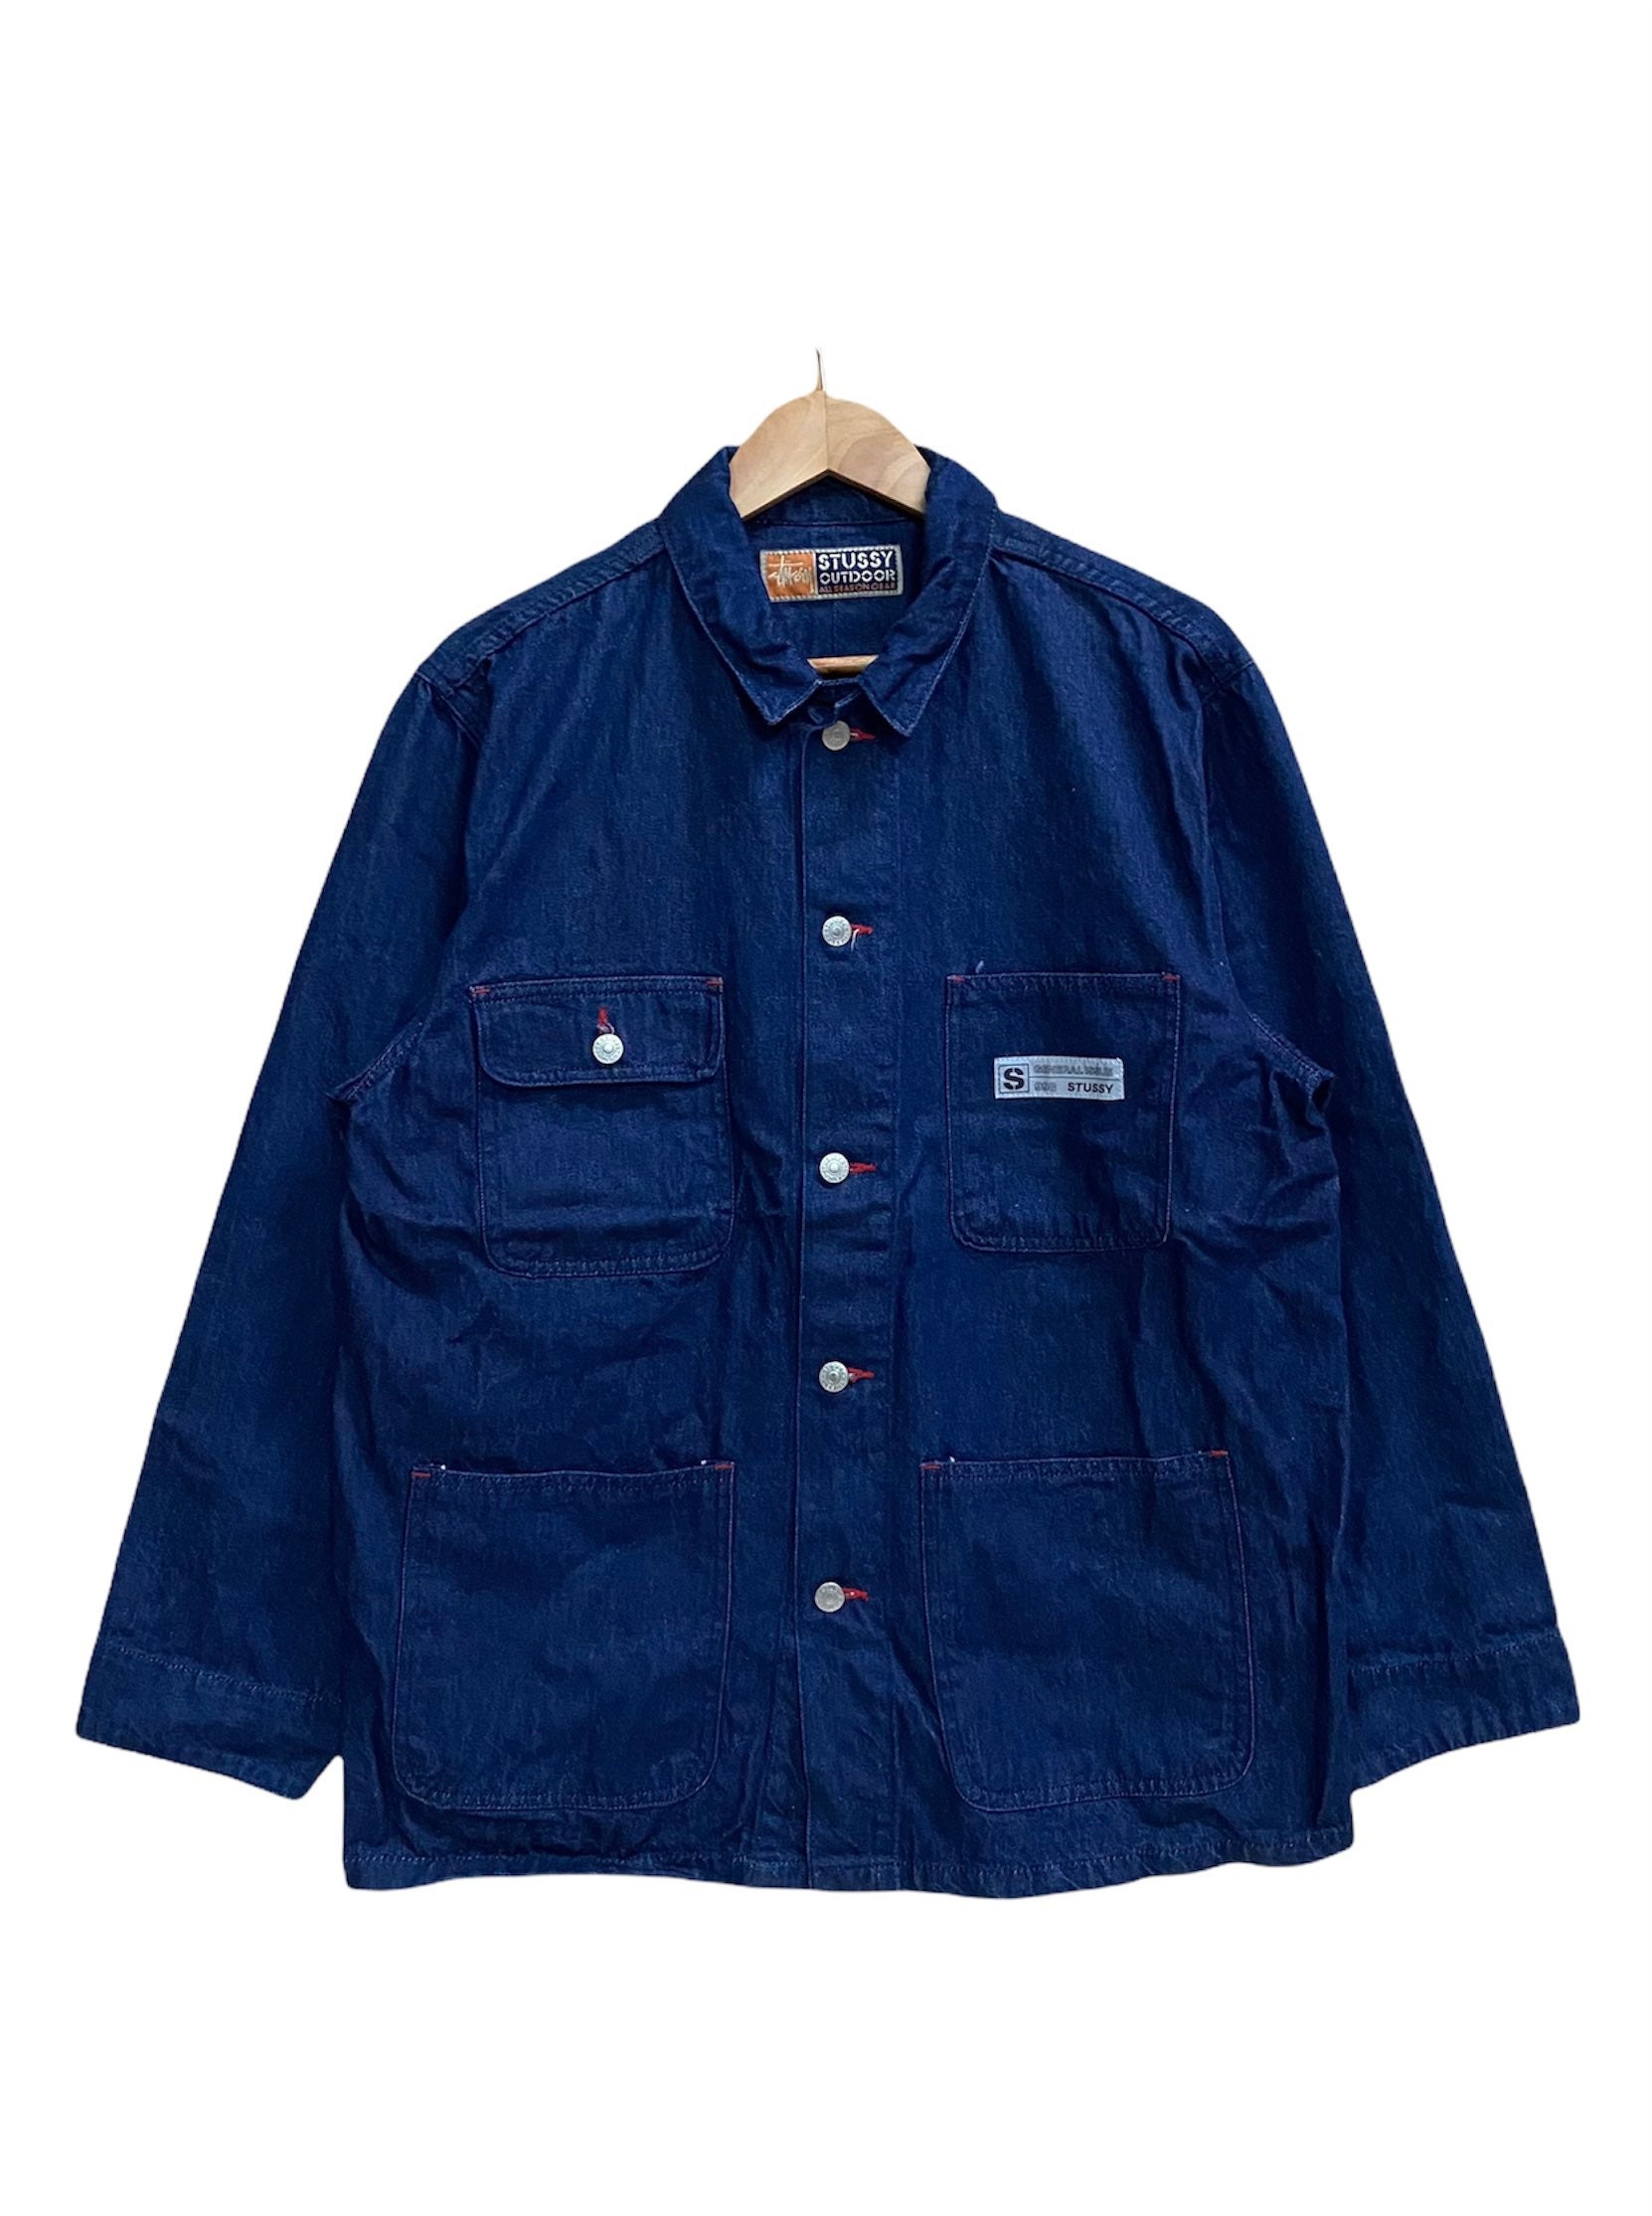 Vintage STUSSY OUTDOOR Workwear Jacket Size M - Etsy